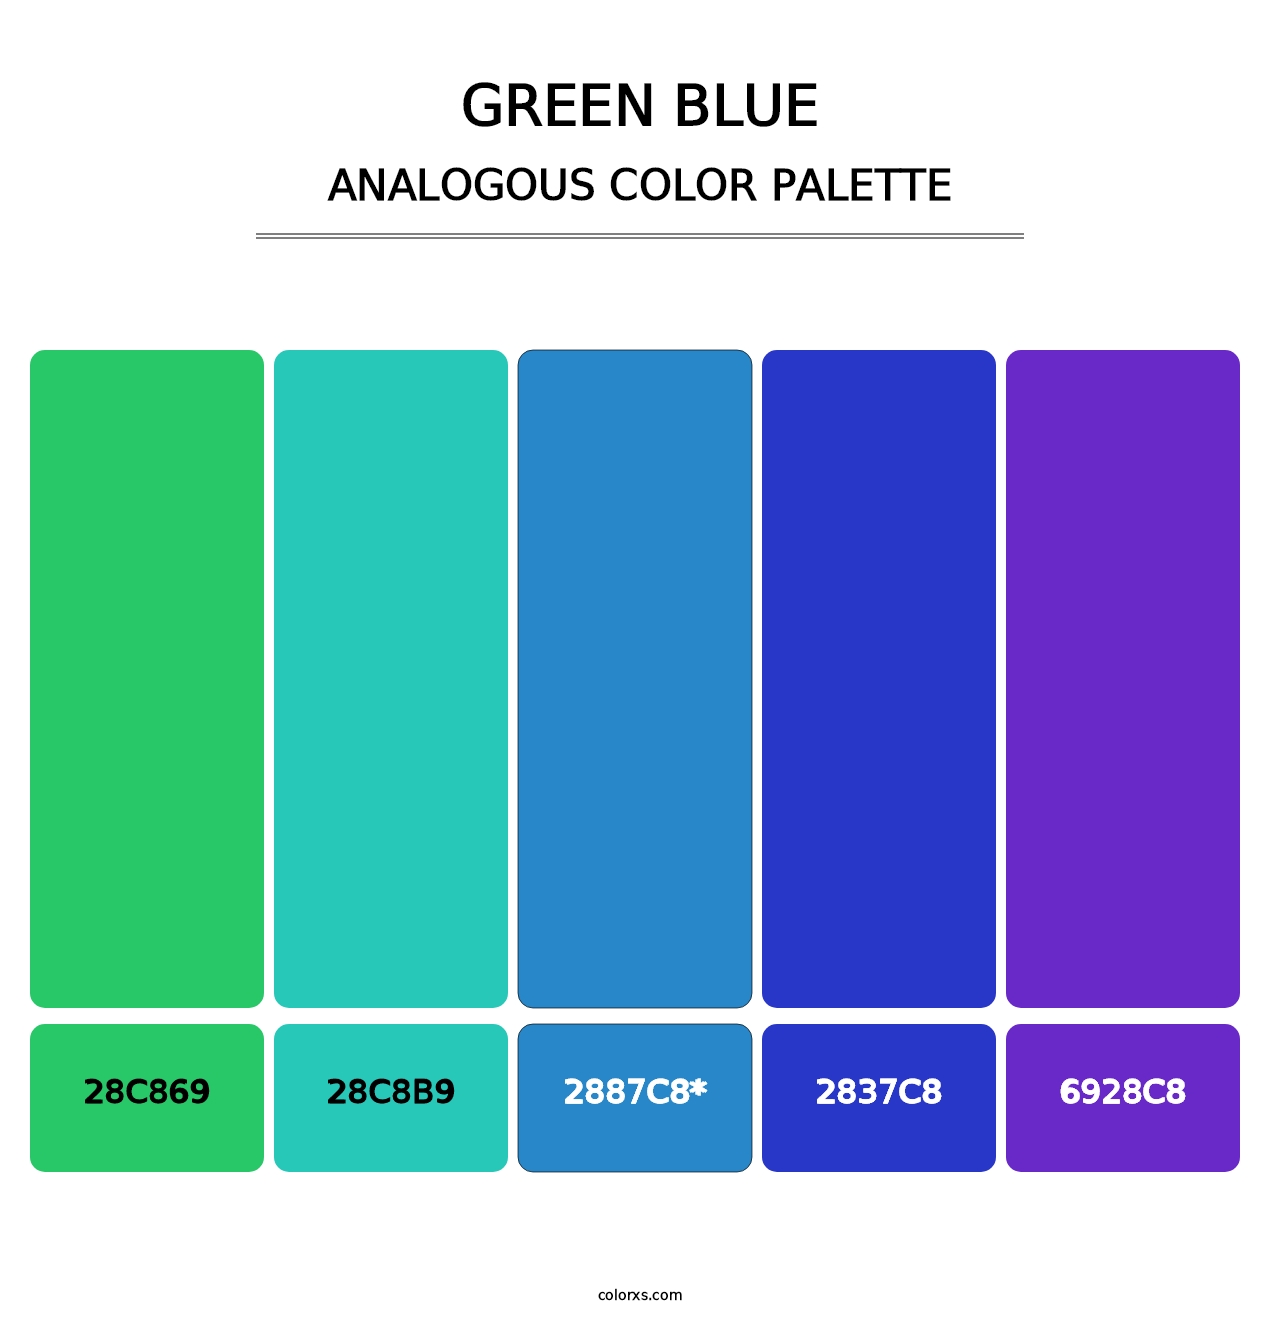 Green Blue - Analogous Color Palette